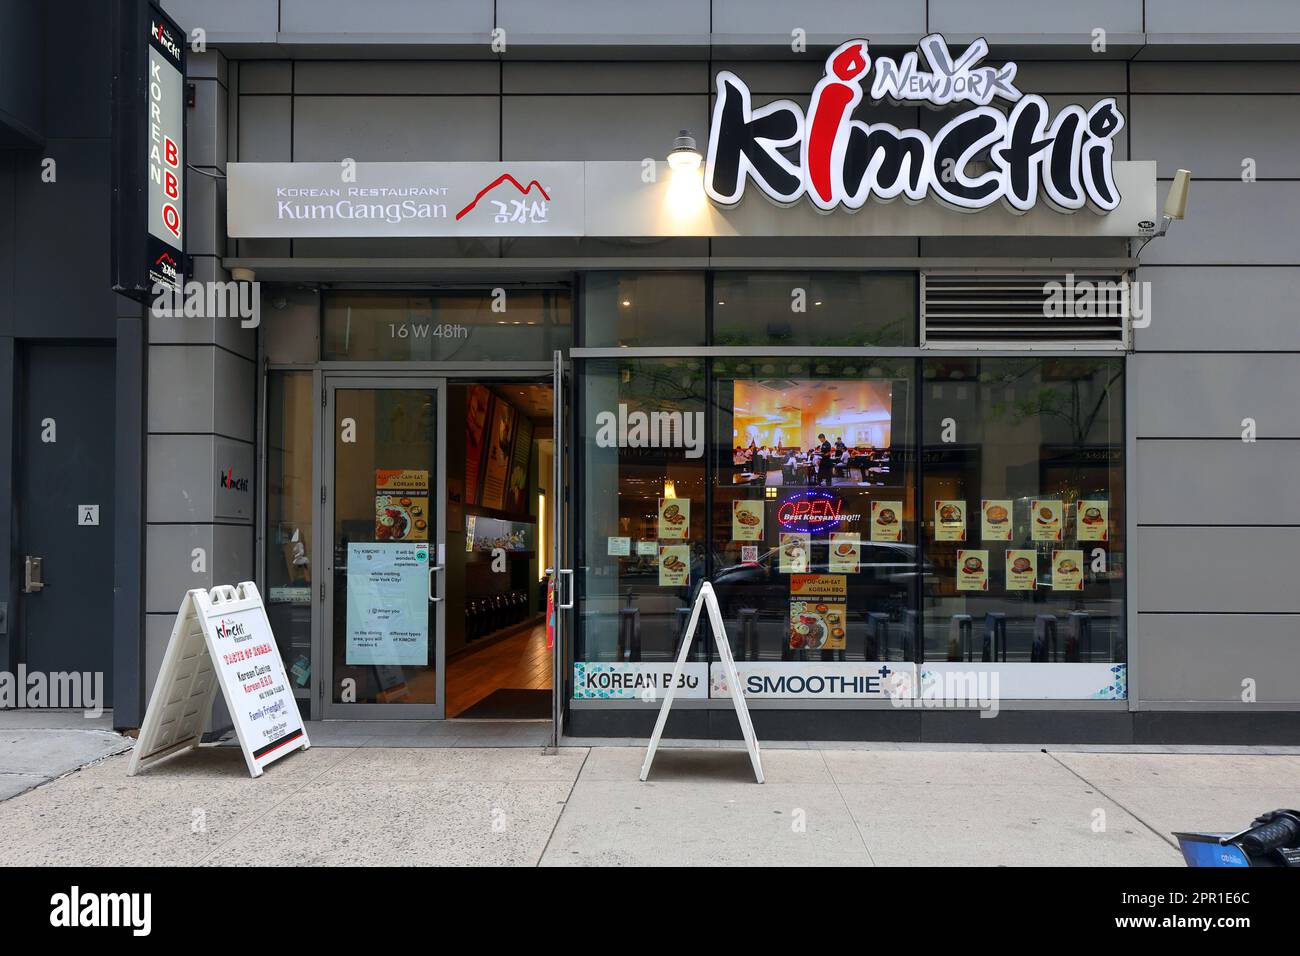 New York Kimchi, 16 W 48th St, New York, NYC foto di un ristorante coreano a Midtown Manhattan. Foto Stock